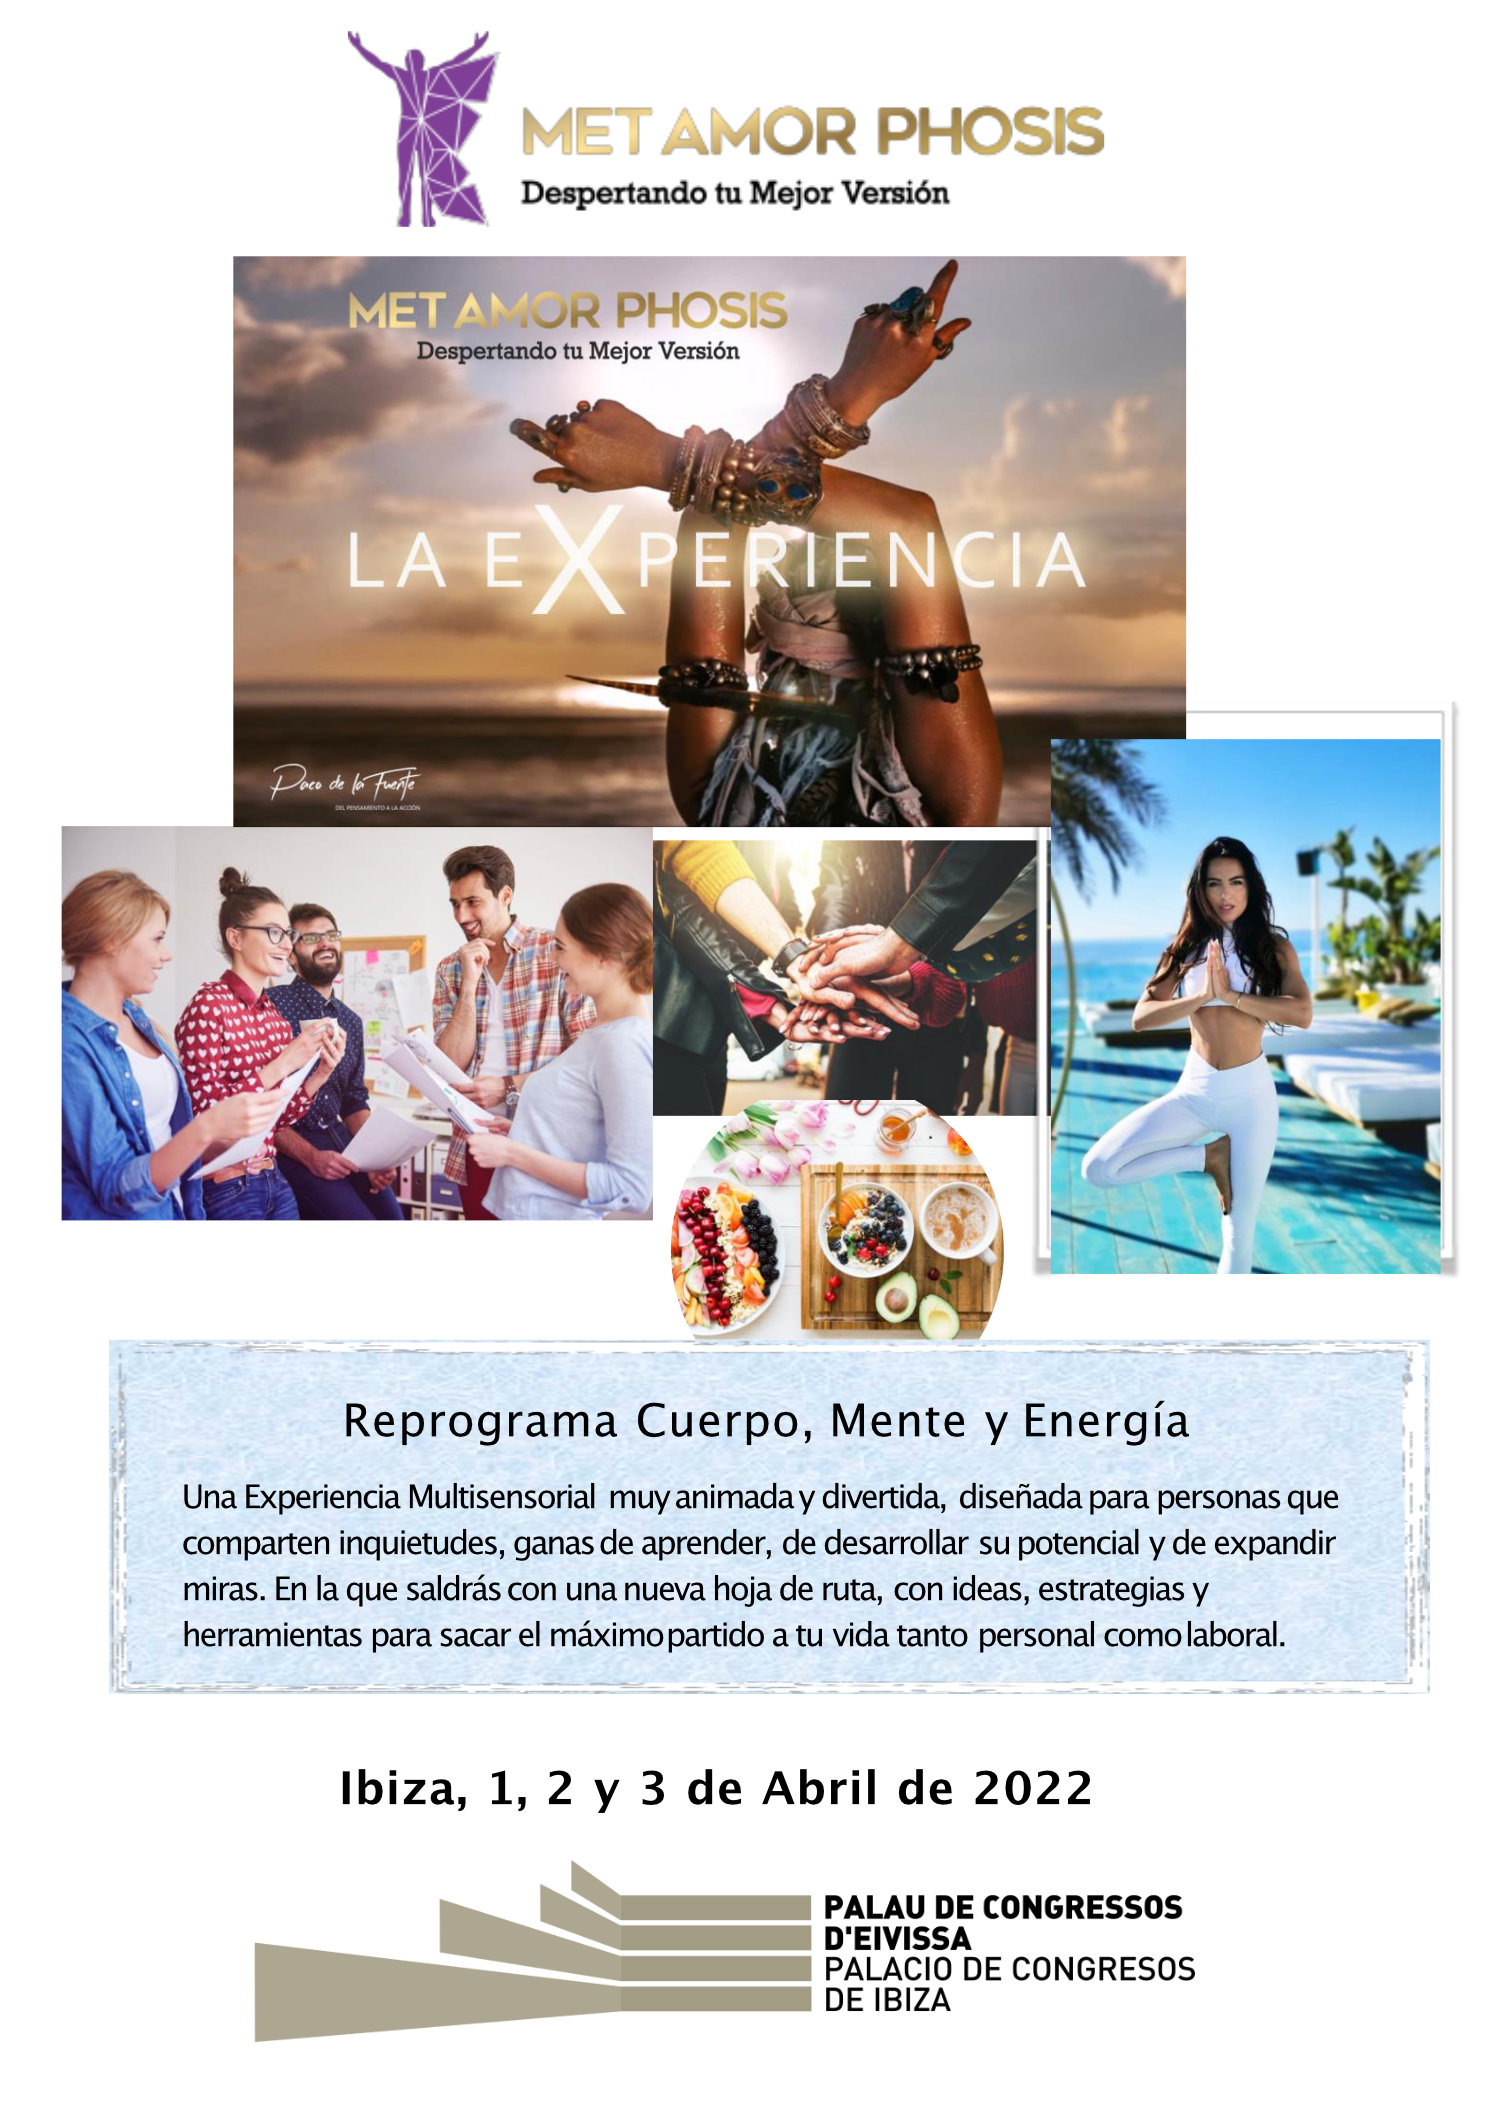 Metamorphosis Ibiza Abril 2022 Palacio de congresos de Ibiza